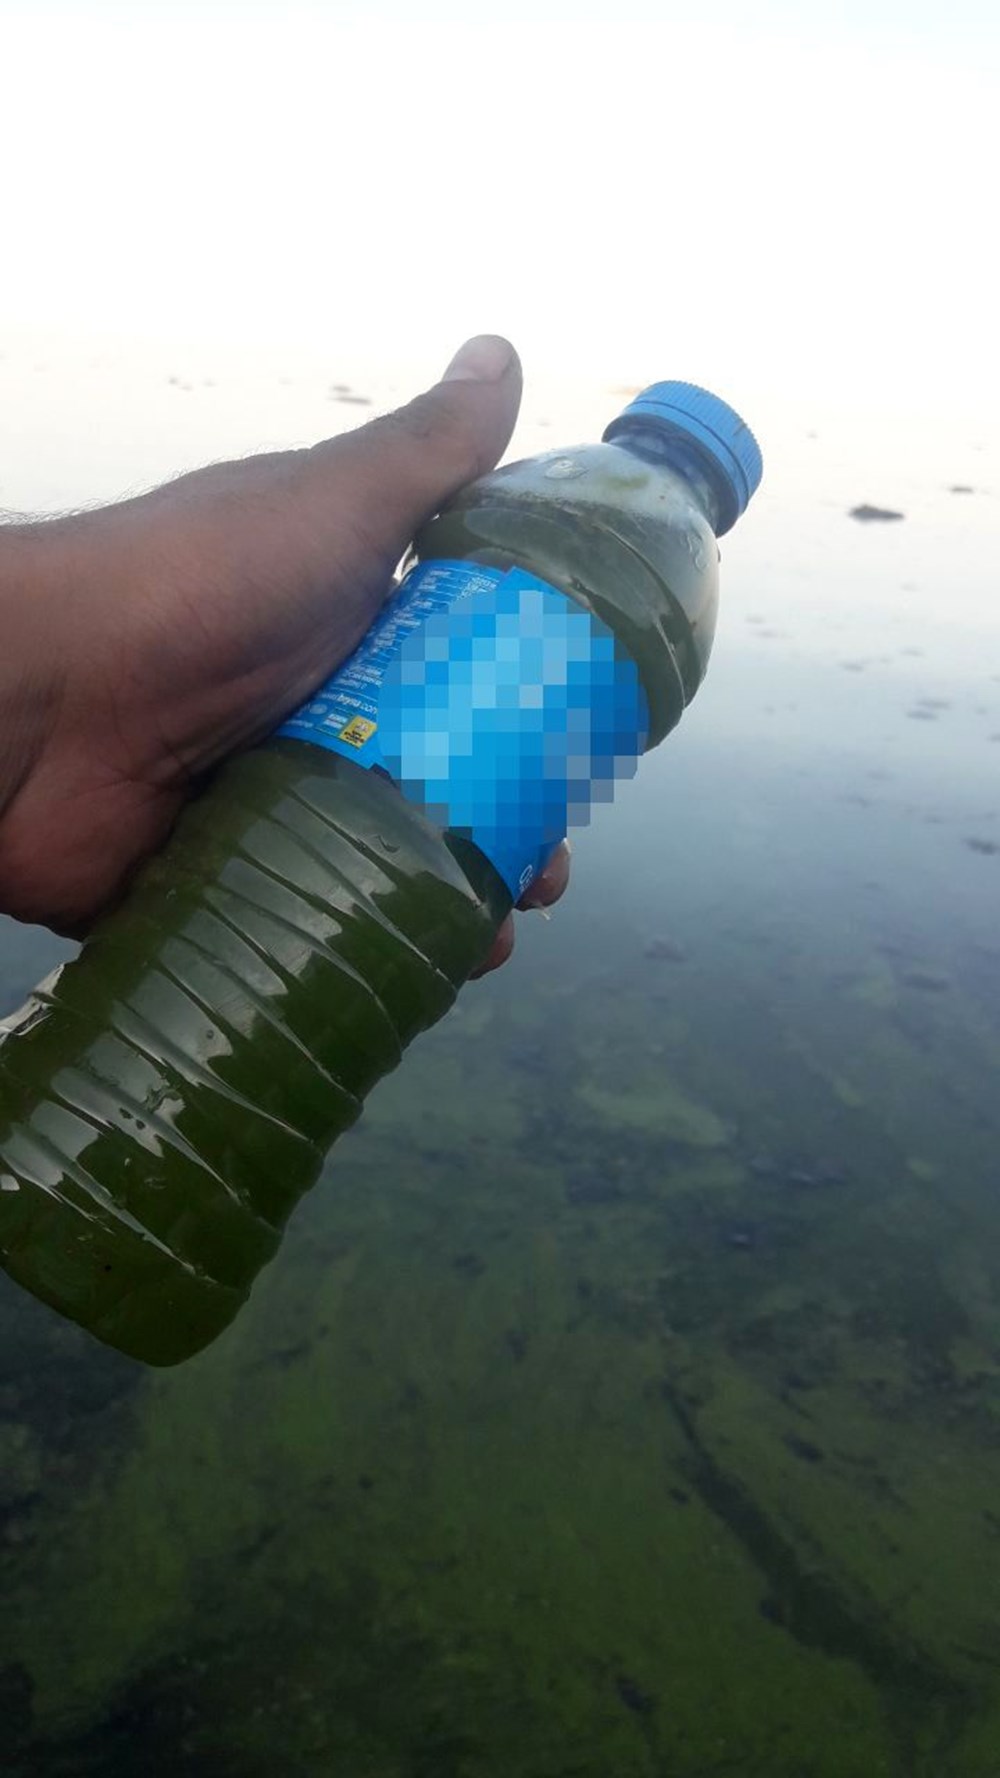 Beyşehir Gölü'nde alg patlaması: Suyun rengi yeşile döndü - 7